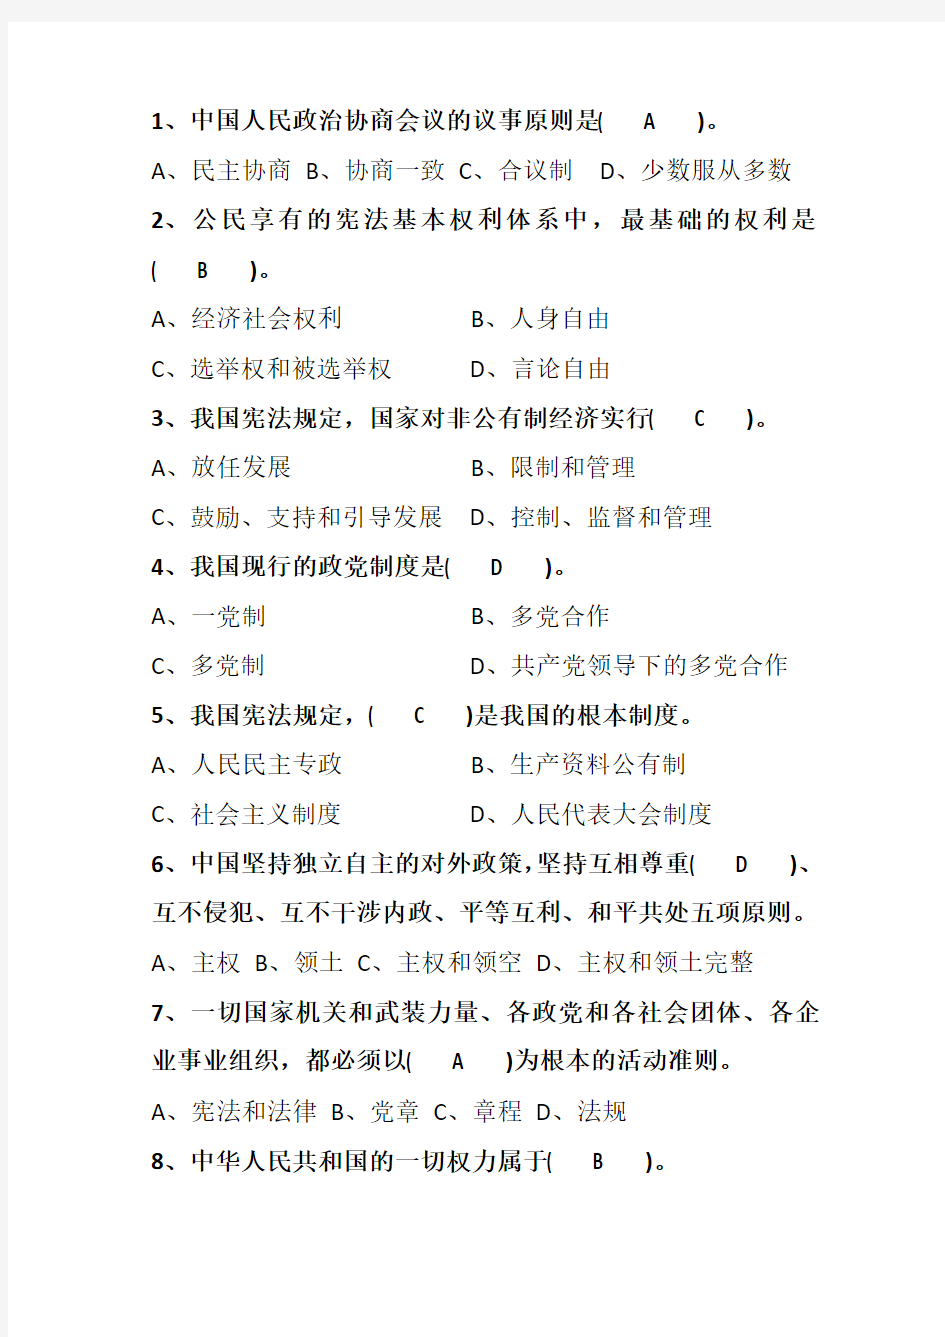 2018最新版重庆市普法考试,宪法、监察法 答案全(100分)